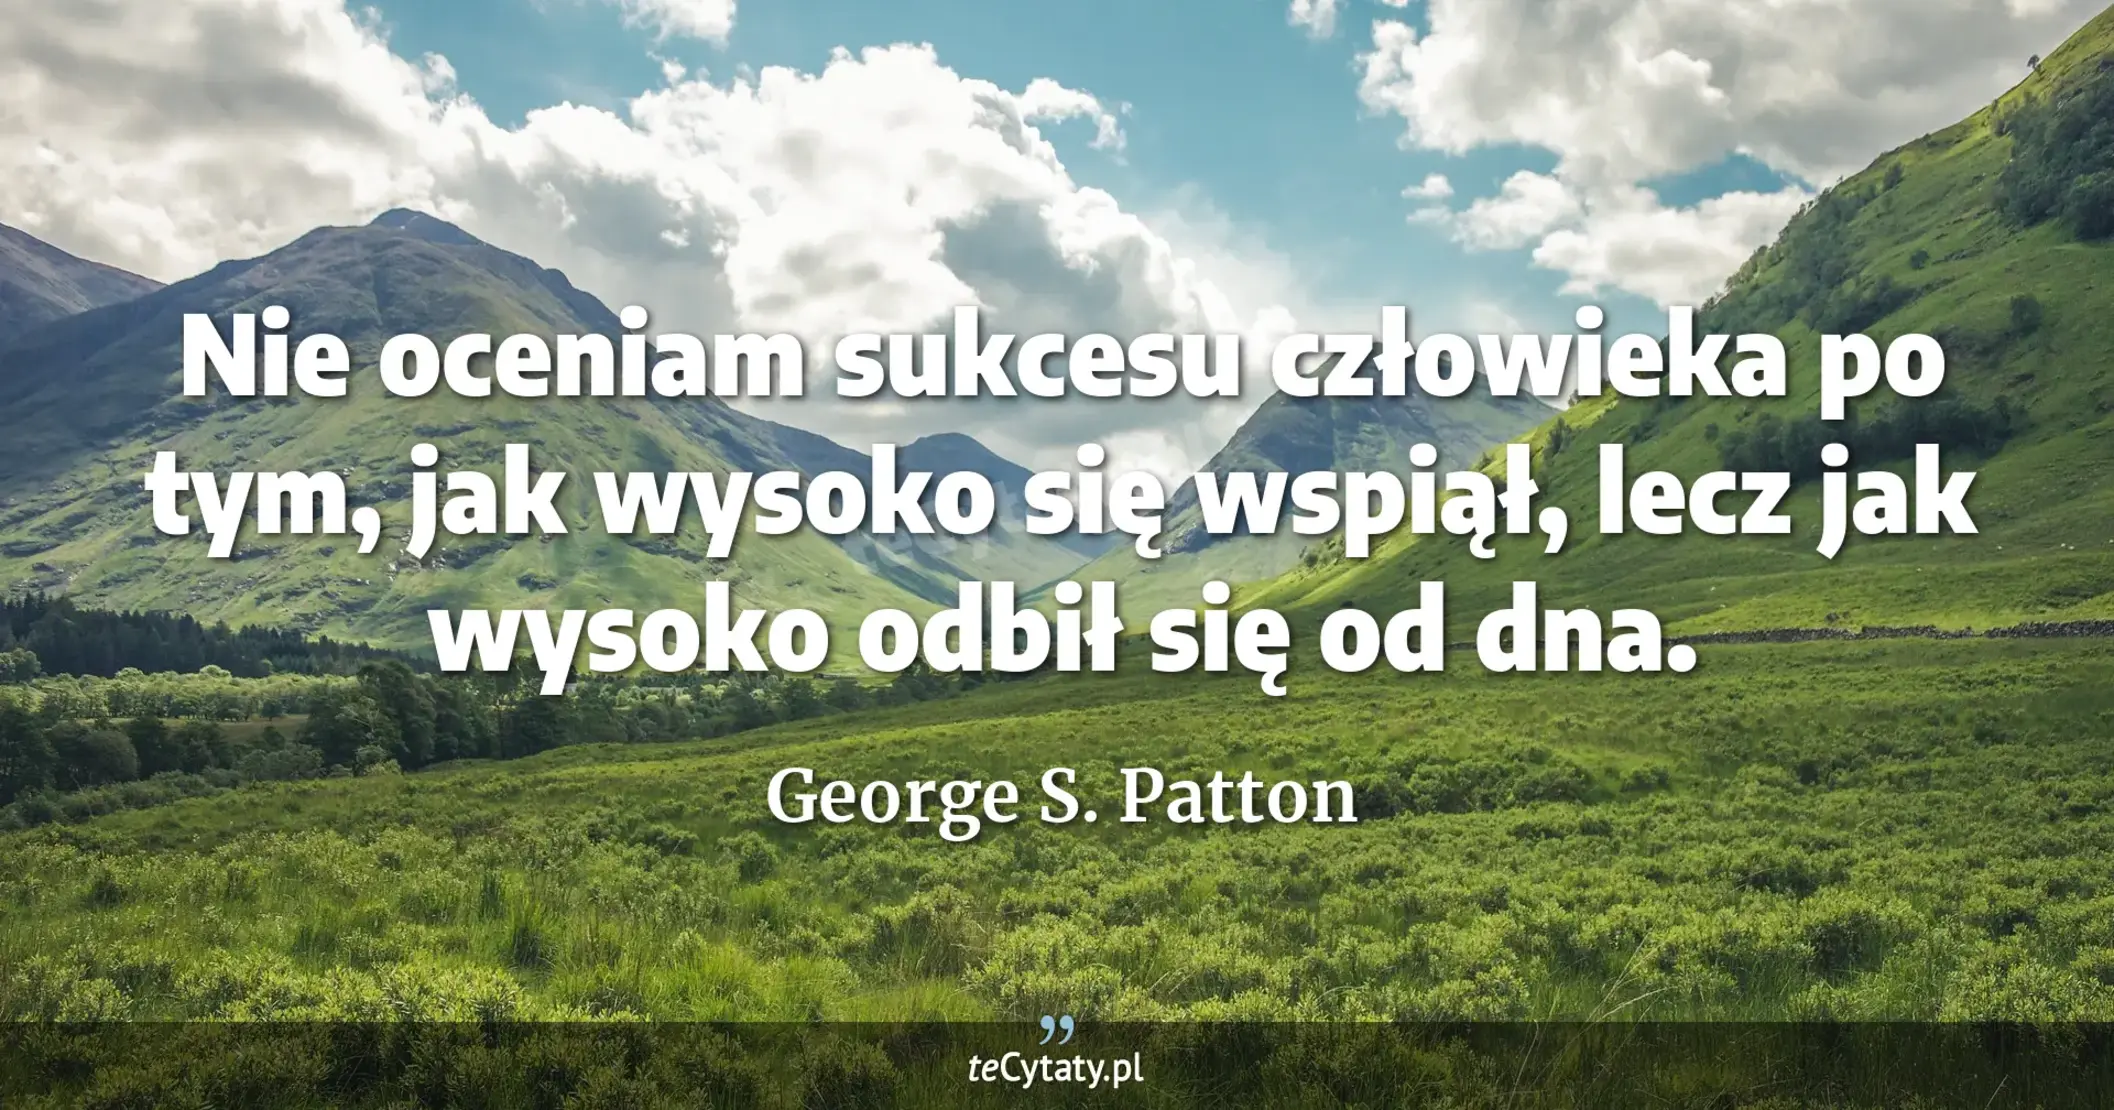 Nie oceniam sukcesu człowieka po tym, jak wysoko się wspiął, lecz jak wysoko odbił się od dna. - George S. Patton